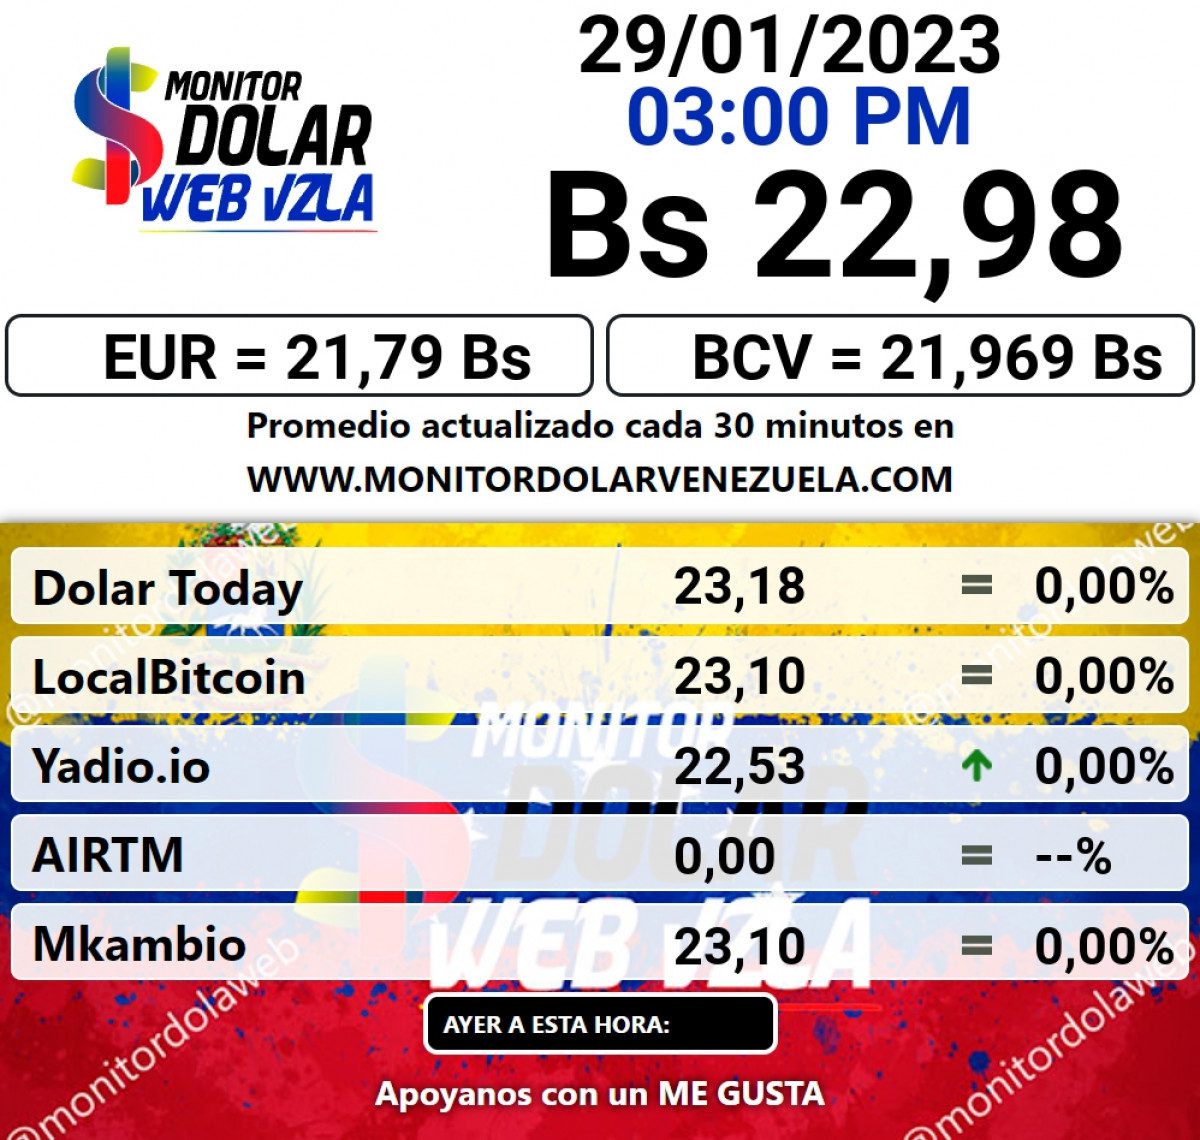 dolartoday en venezuela precio del dolar domingo 29 de enero de 2023 laverdaddemonagas.com monitor11